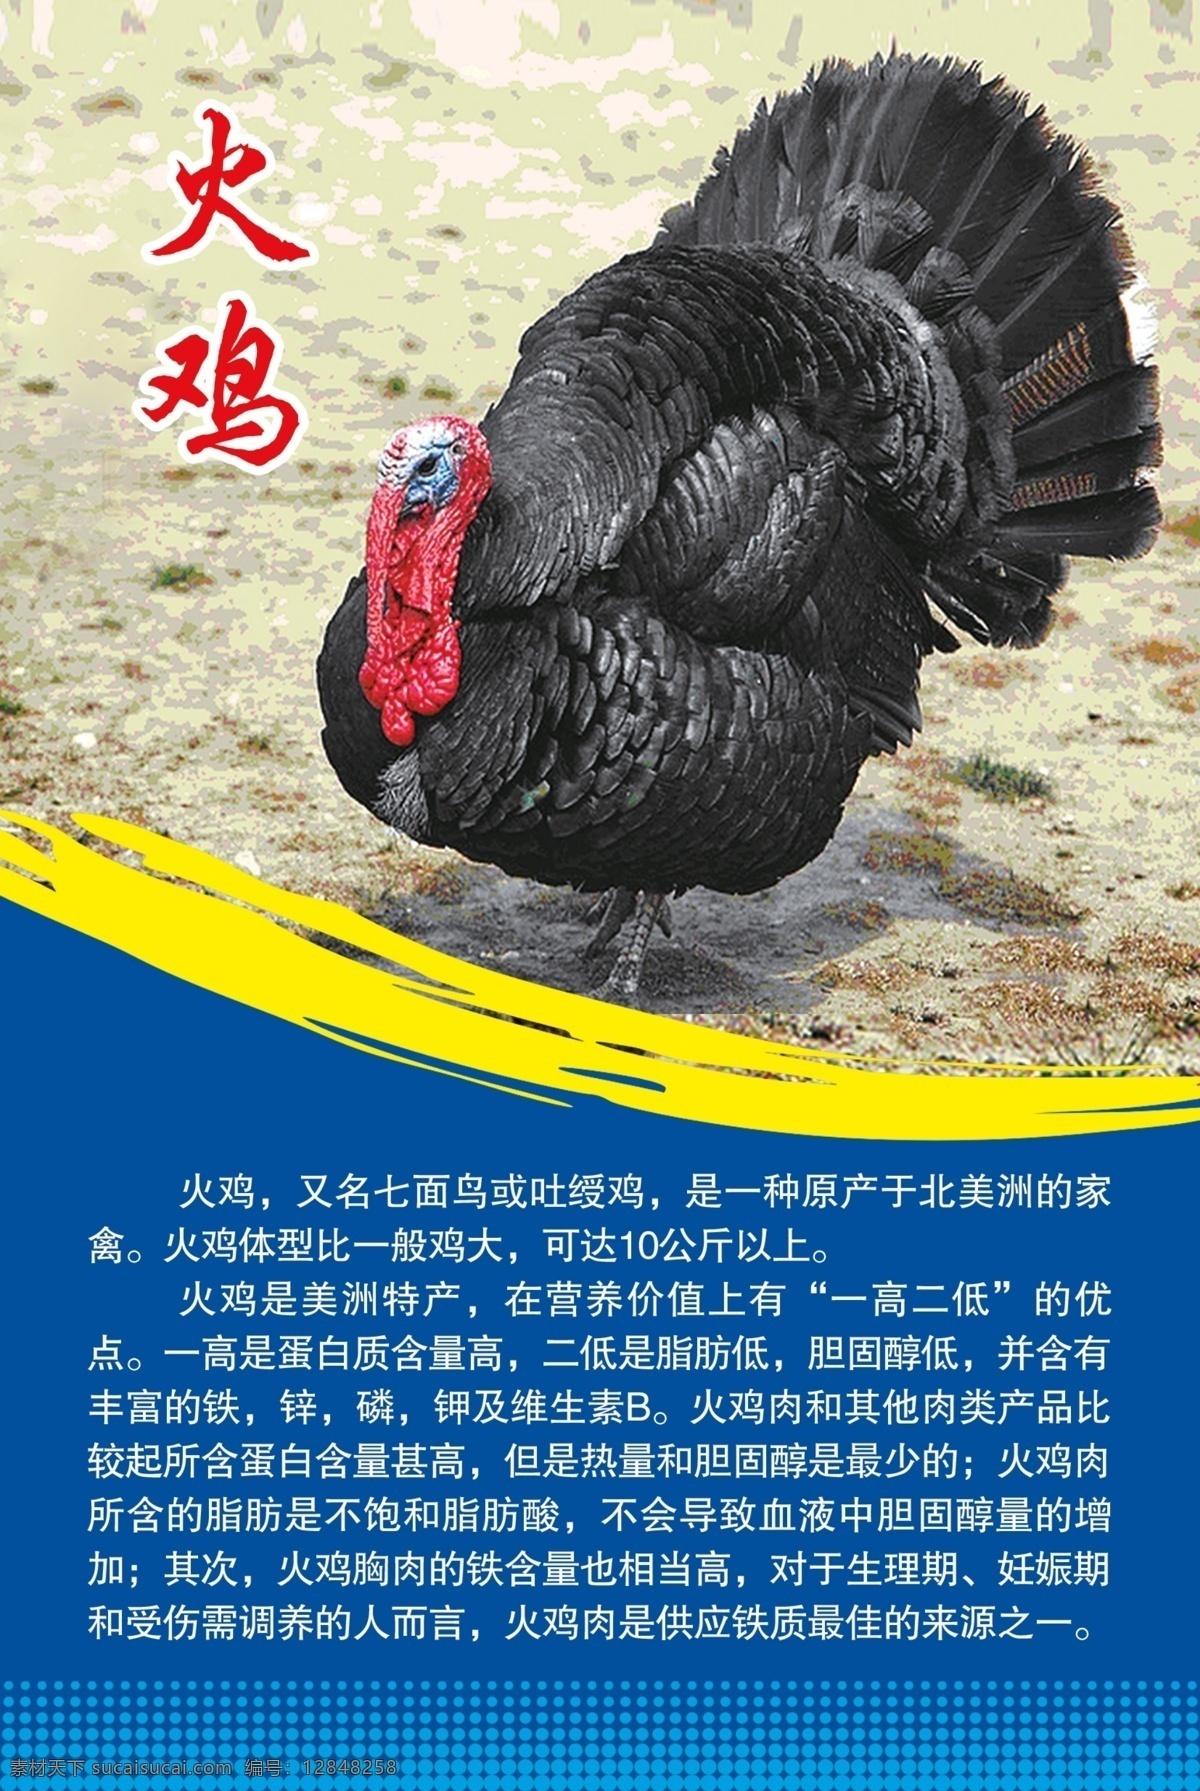 火鸡 火鸡简介 火鸡营养价值 野生 鸟类 禽鸟 野生生物 广告设计模板 源文件